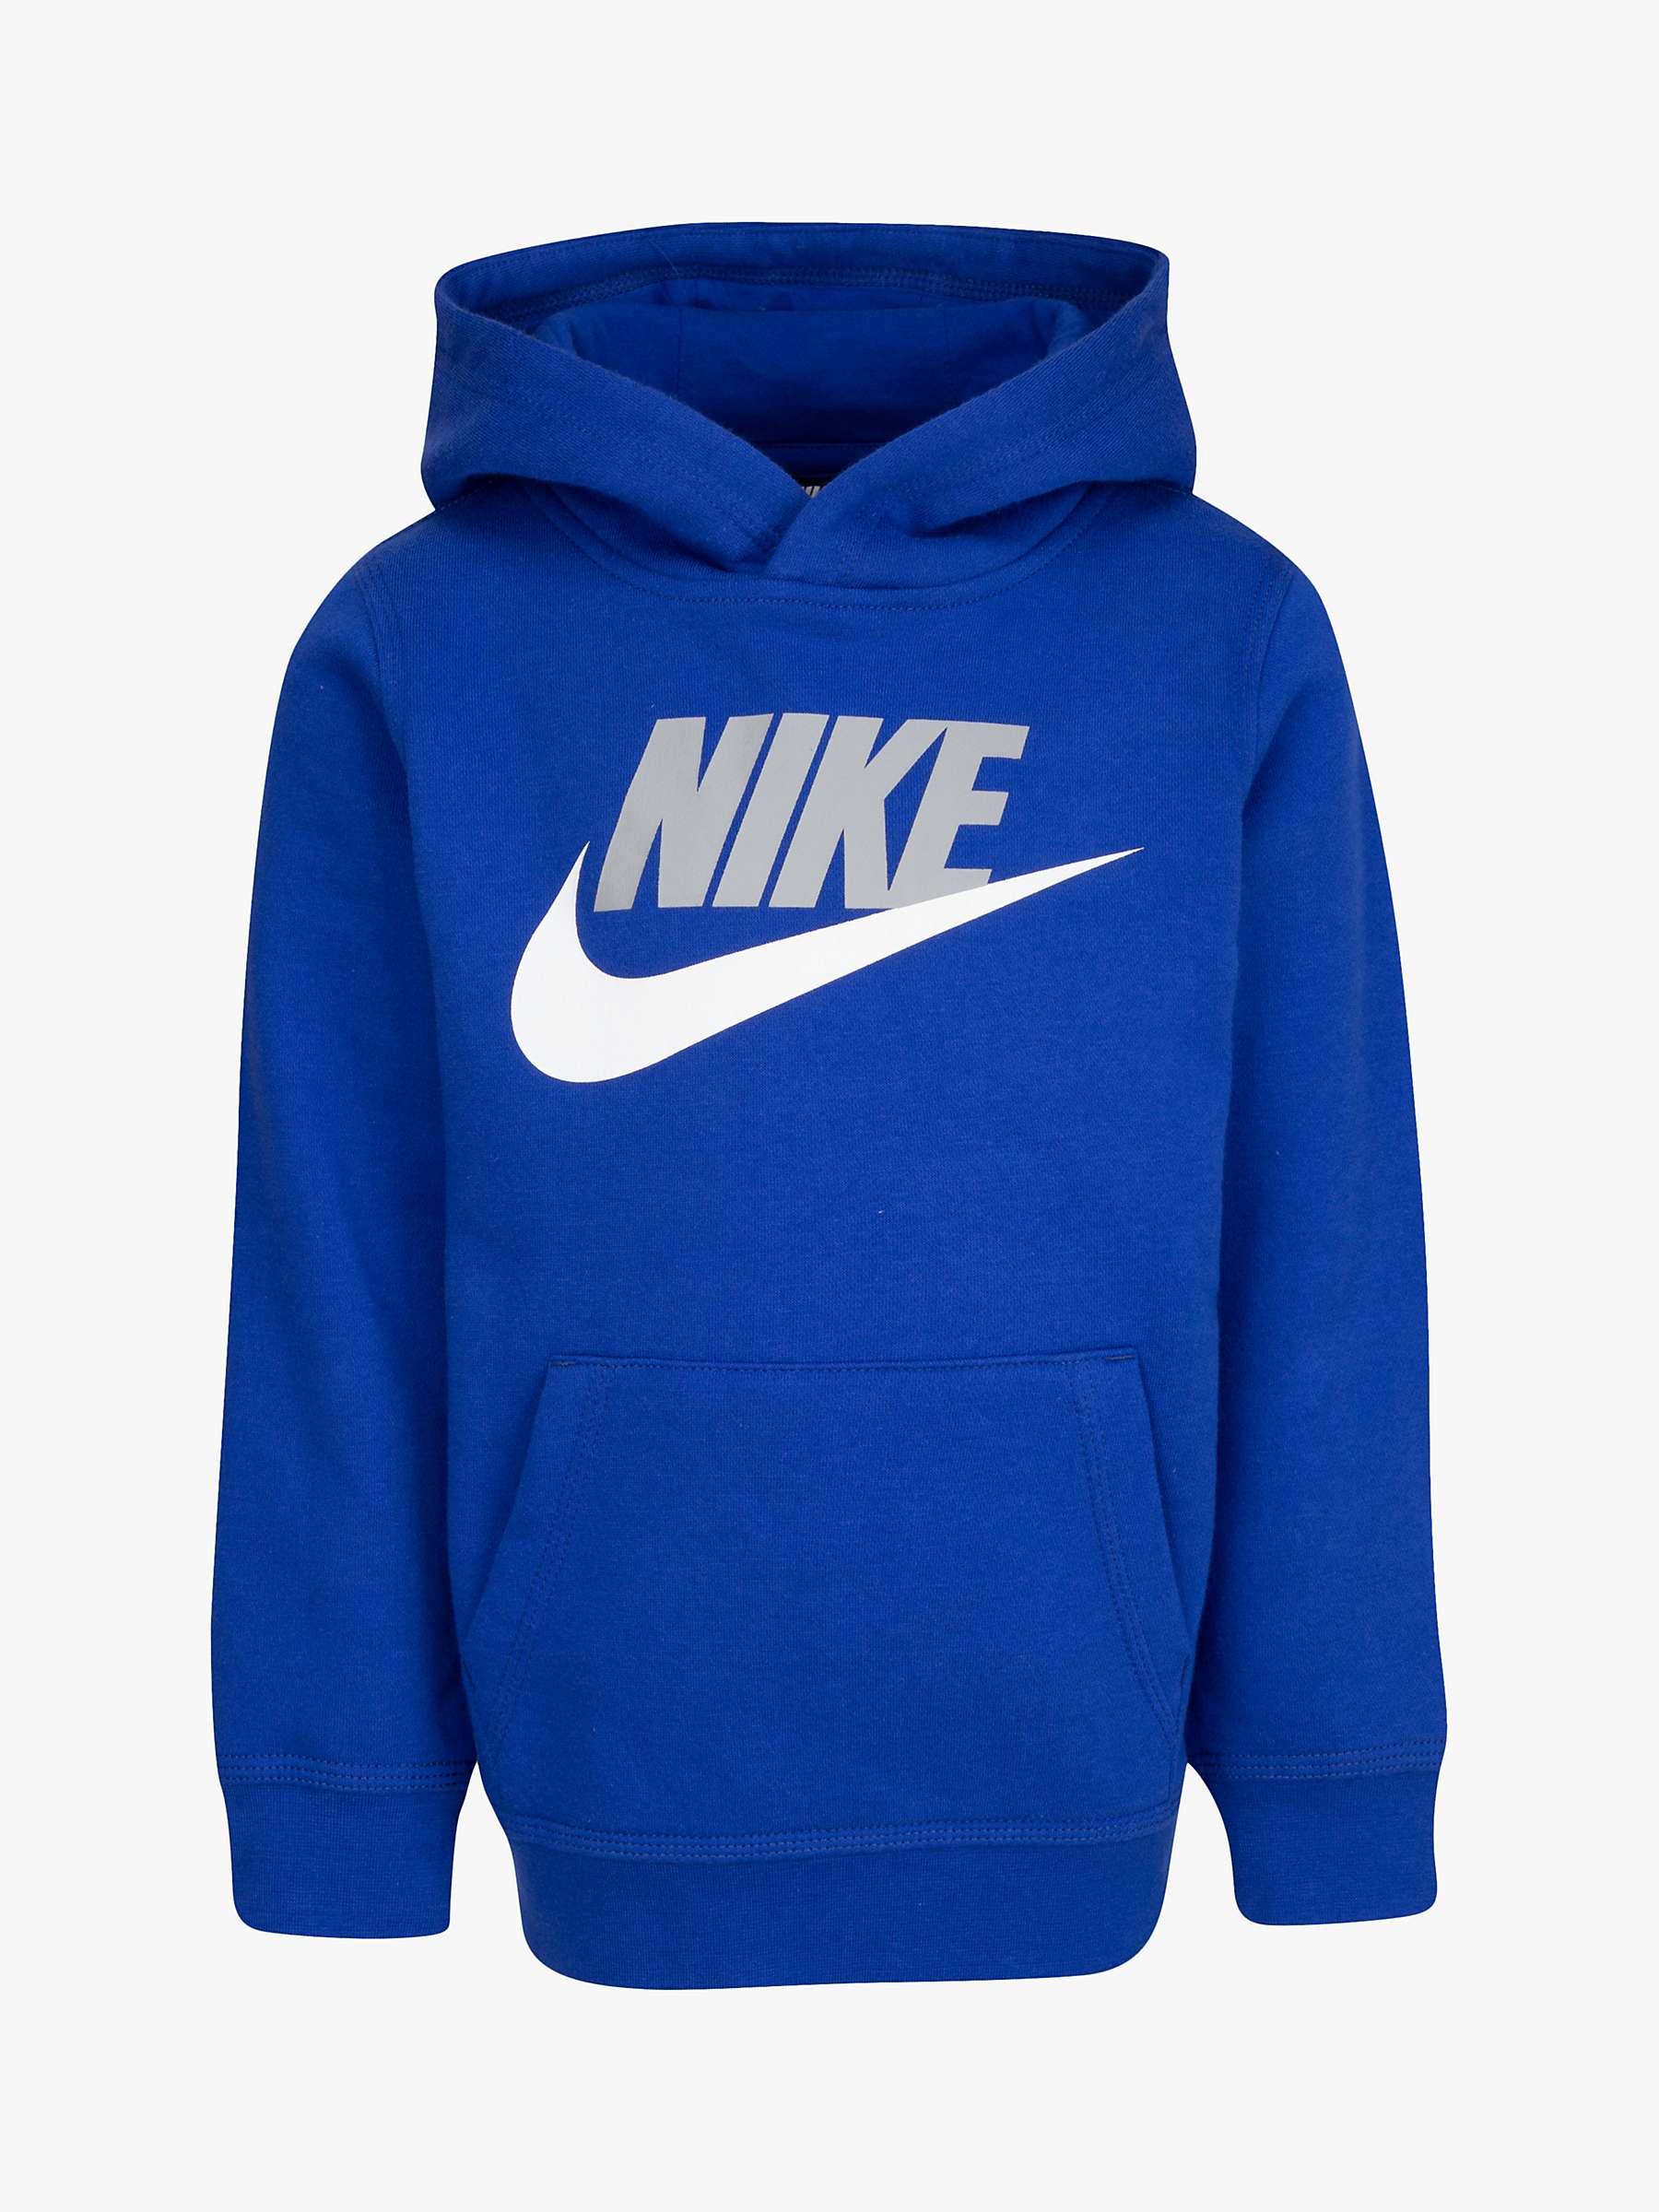 Buy Nike Kids' Logo Hoodie Online at johnlewis.com